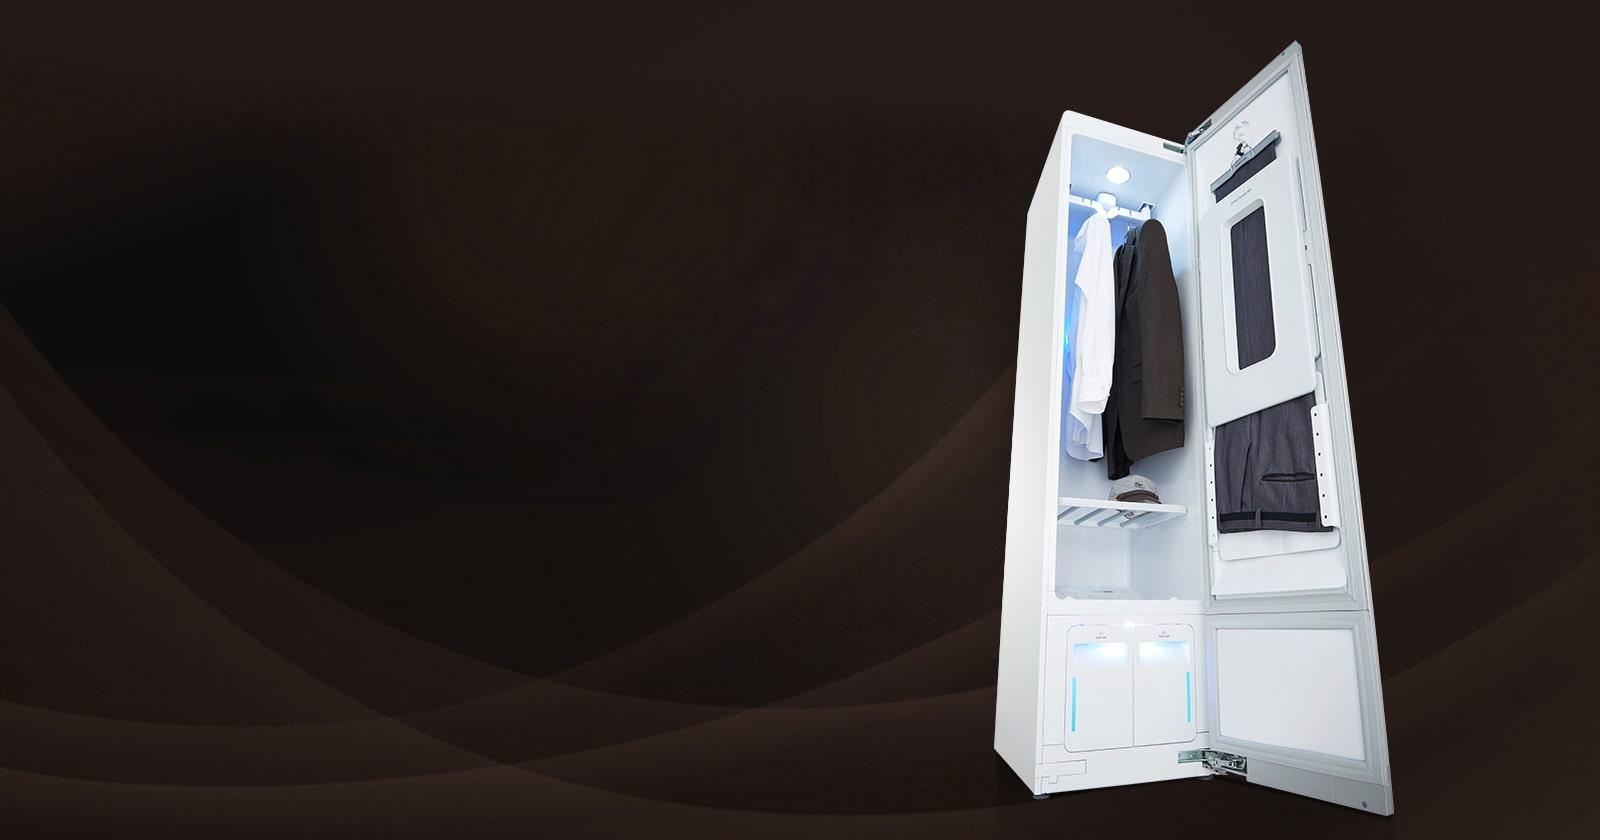 Công nghệ lưu hương ở máy giặt LG Styler sẽ giúp bạn lưu giữ lại hương thơm nhẹ nhàng và đầy tinh tế trên quần áo của mình